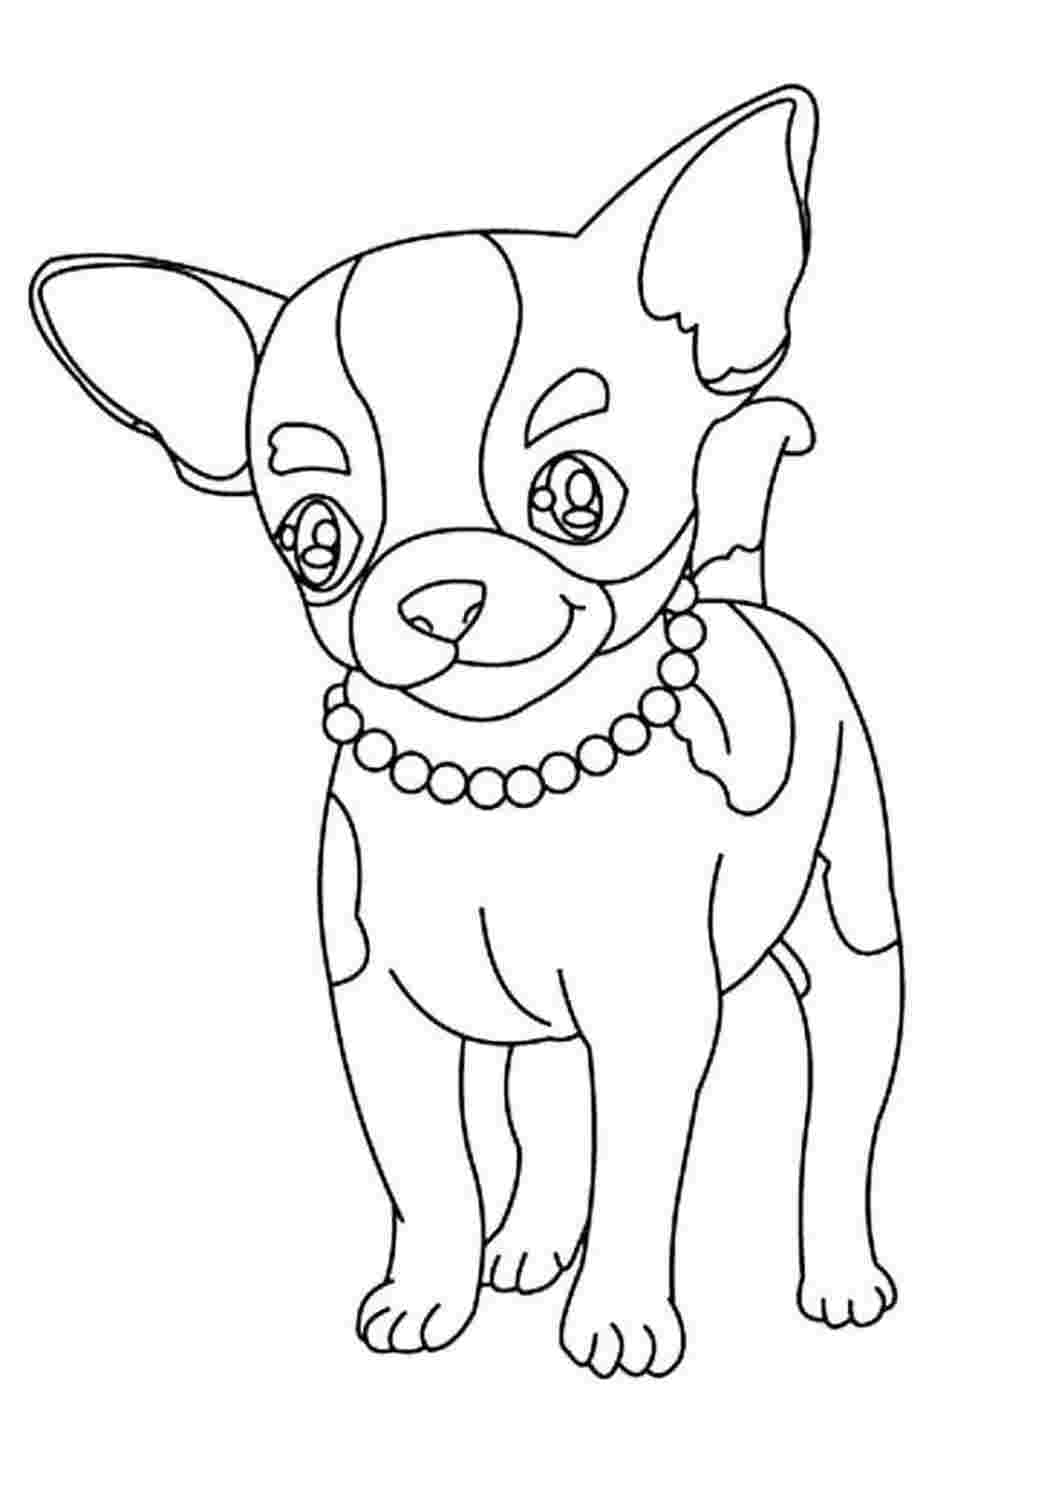 Раскраска собаки чихуахуа. Раскраска собаки Чихуахуа. Черно белые раскраски.